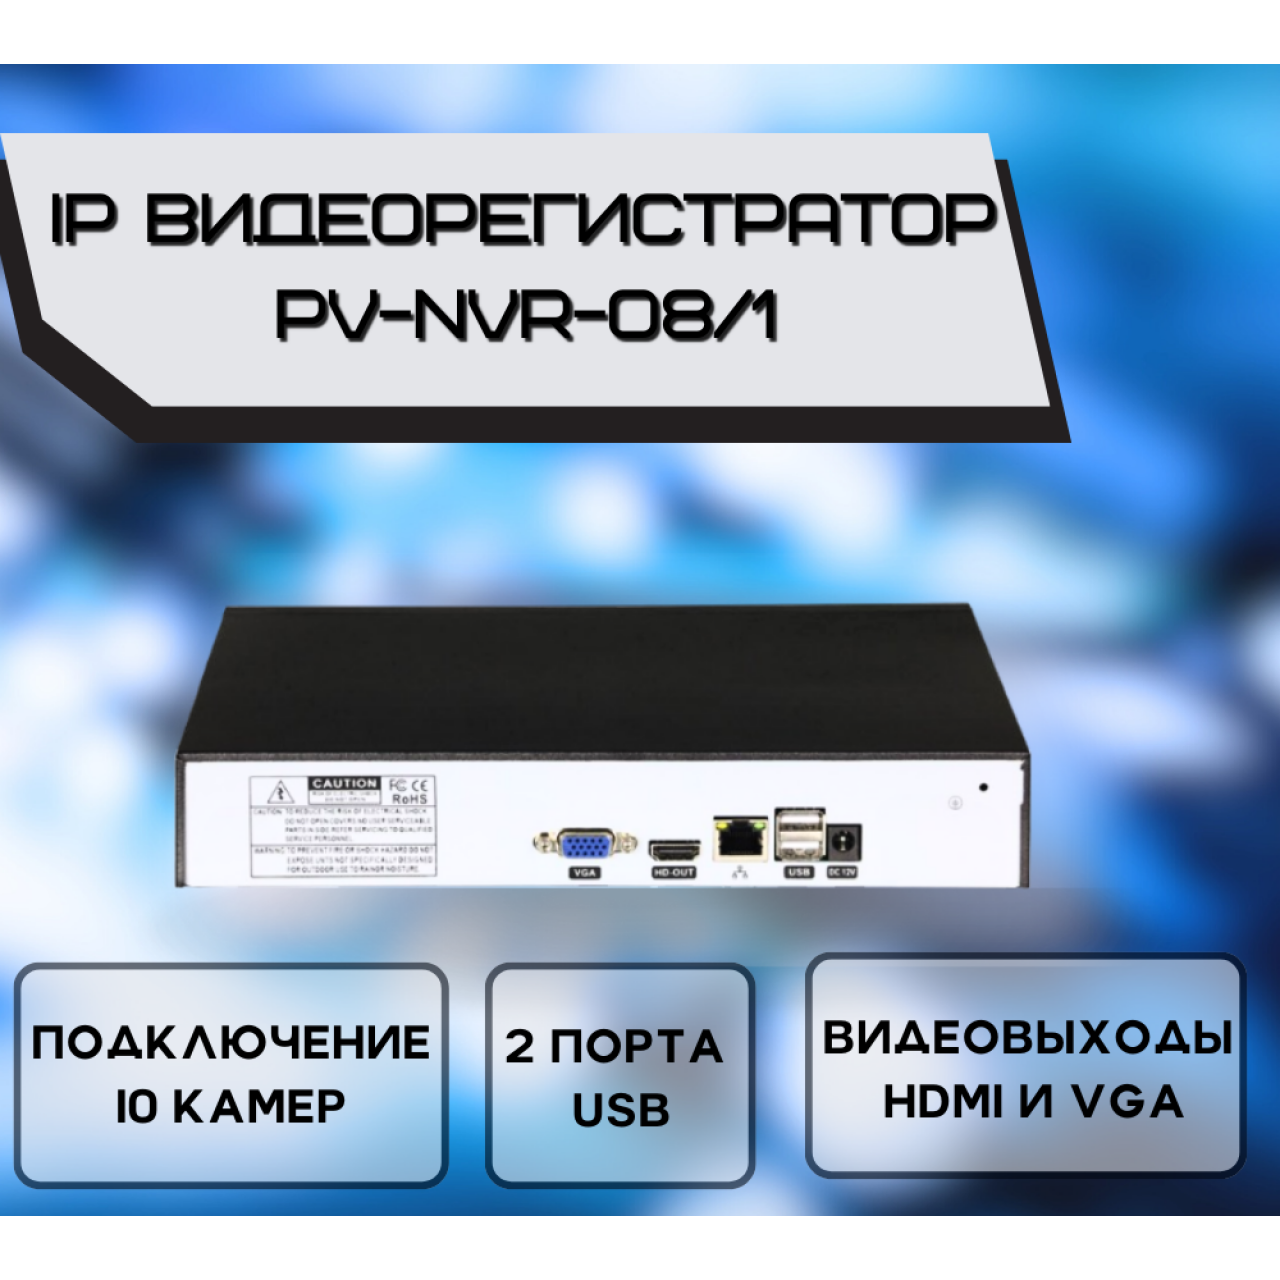 Сетевой NVR видеорегистратор PV-NVR-08/1